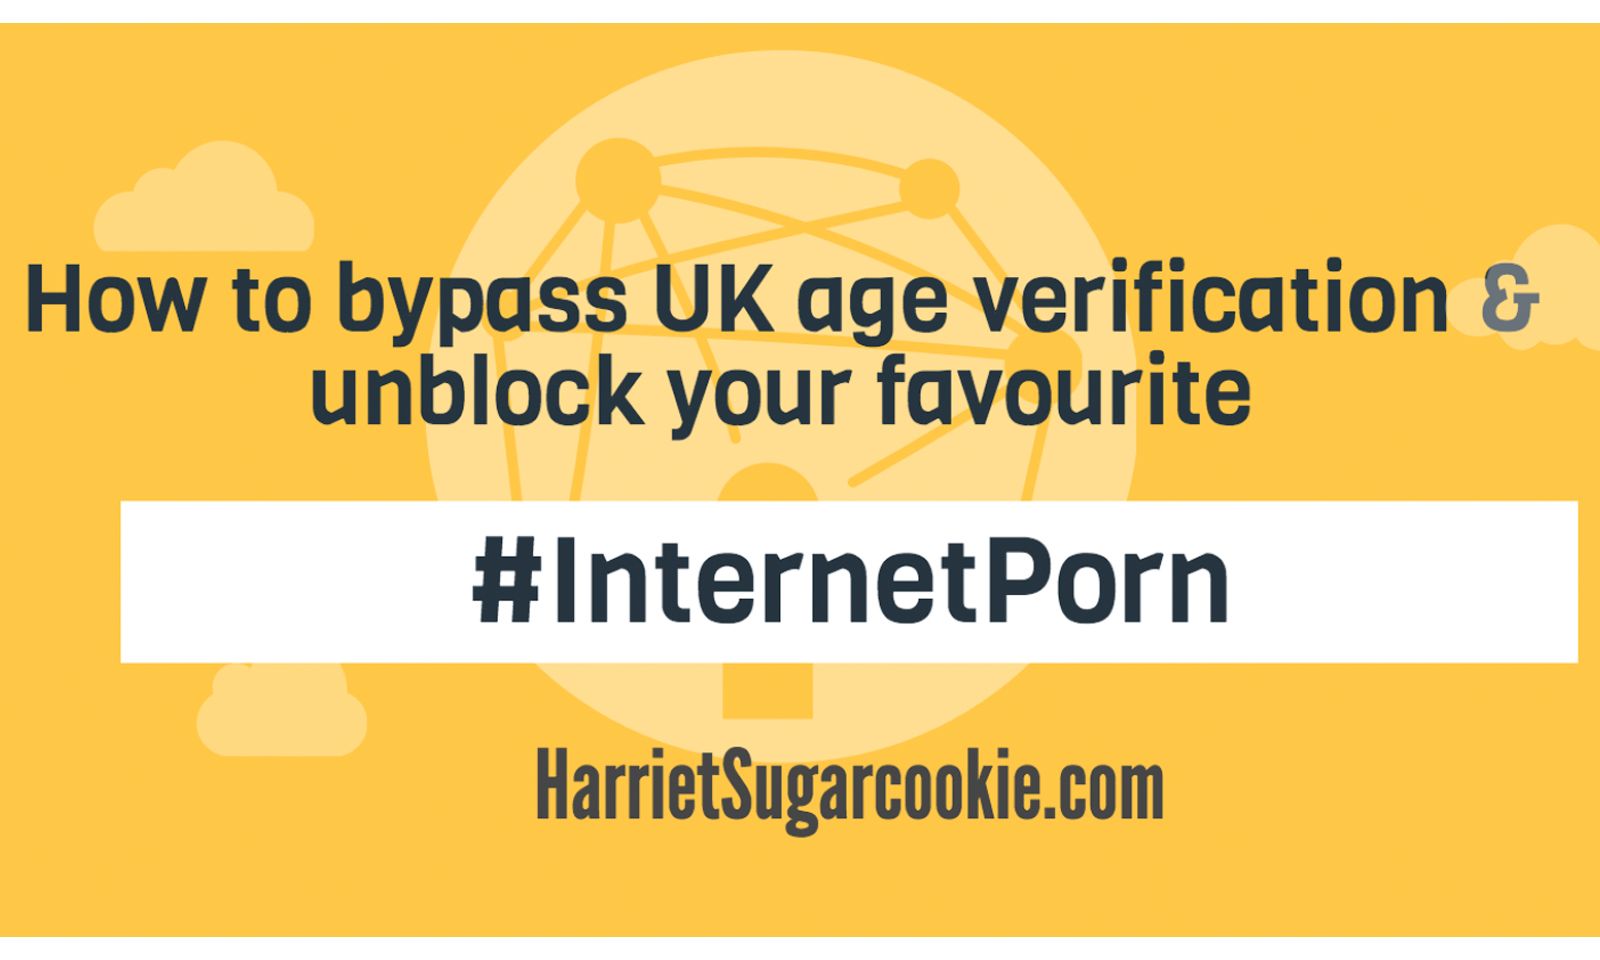 Harriet Sugarcookie.com Suggests Ways Around UK Age Verification